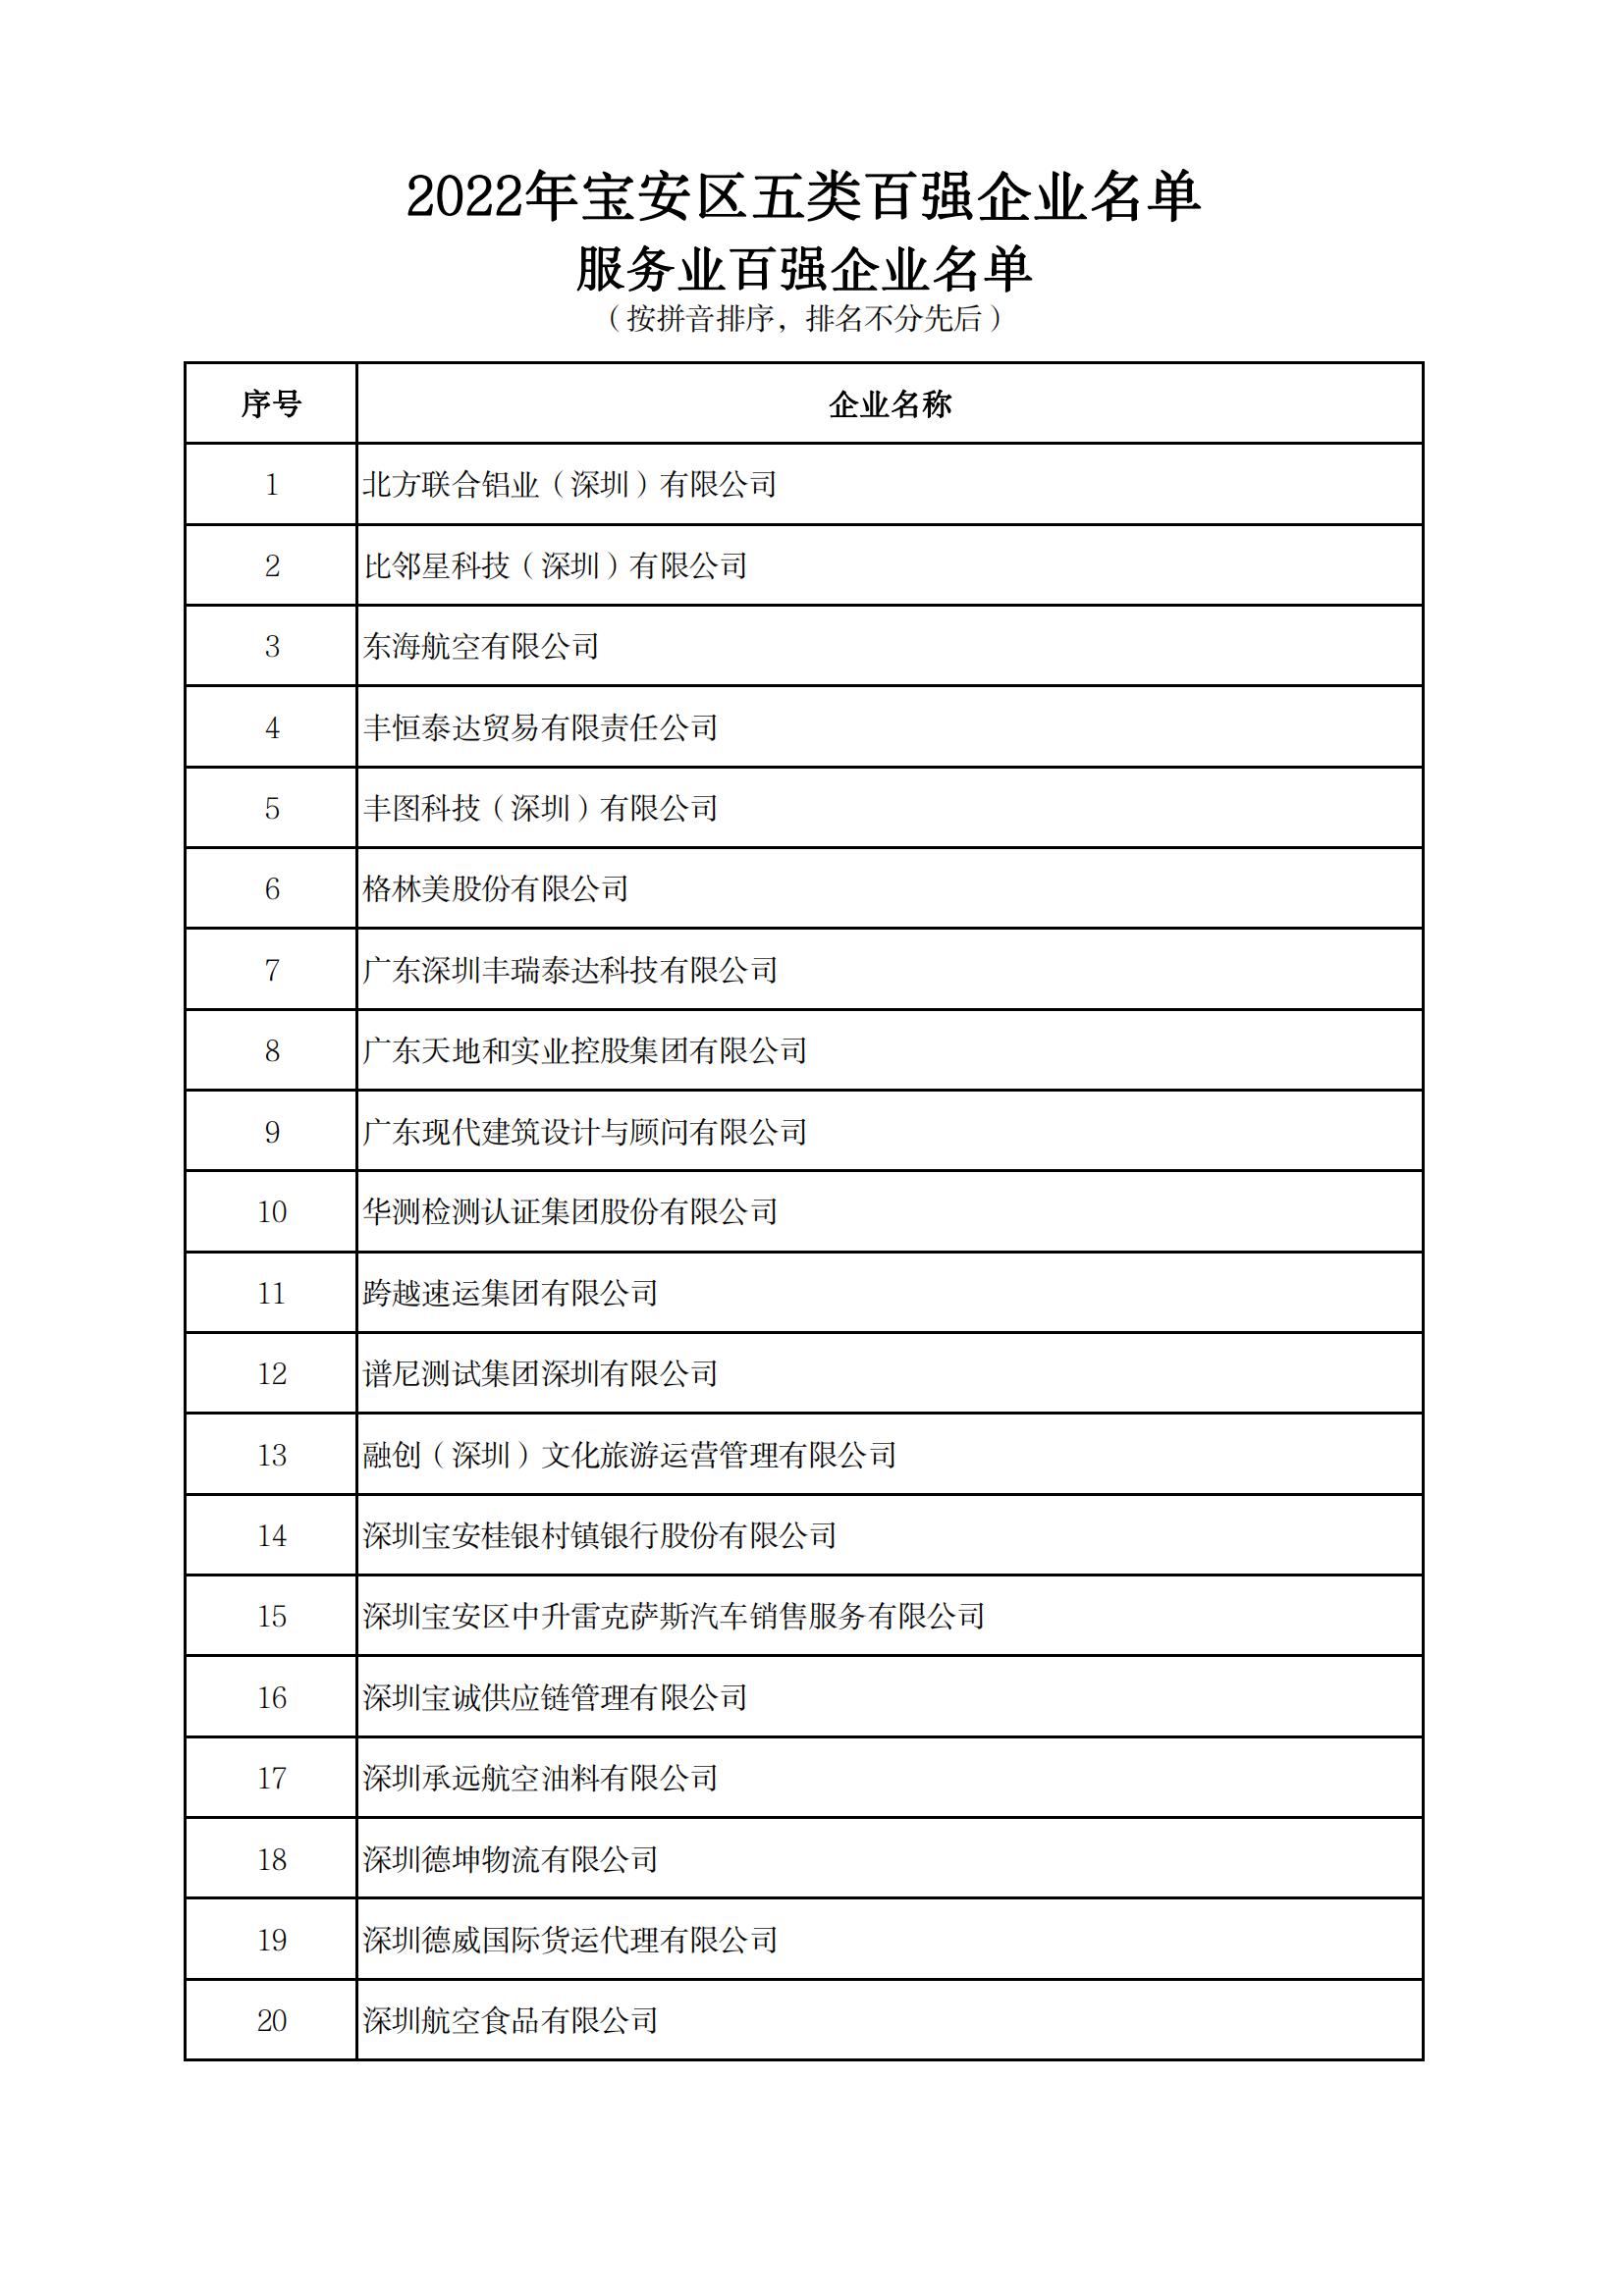 附件：2022年宝安区五类百强企业名单_10.jpg